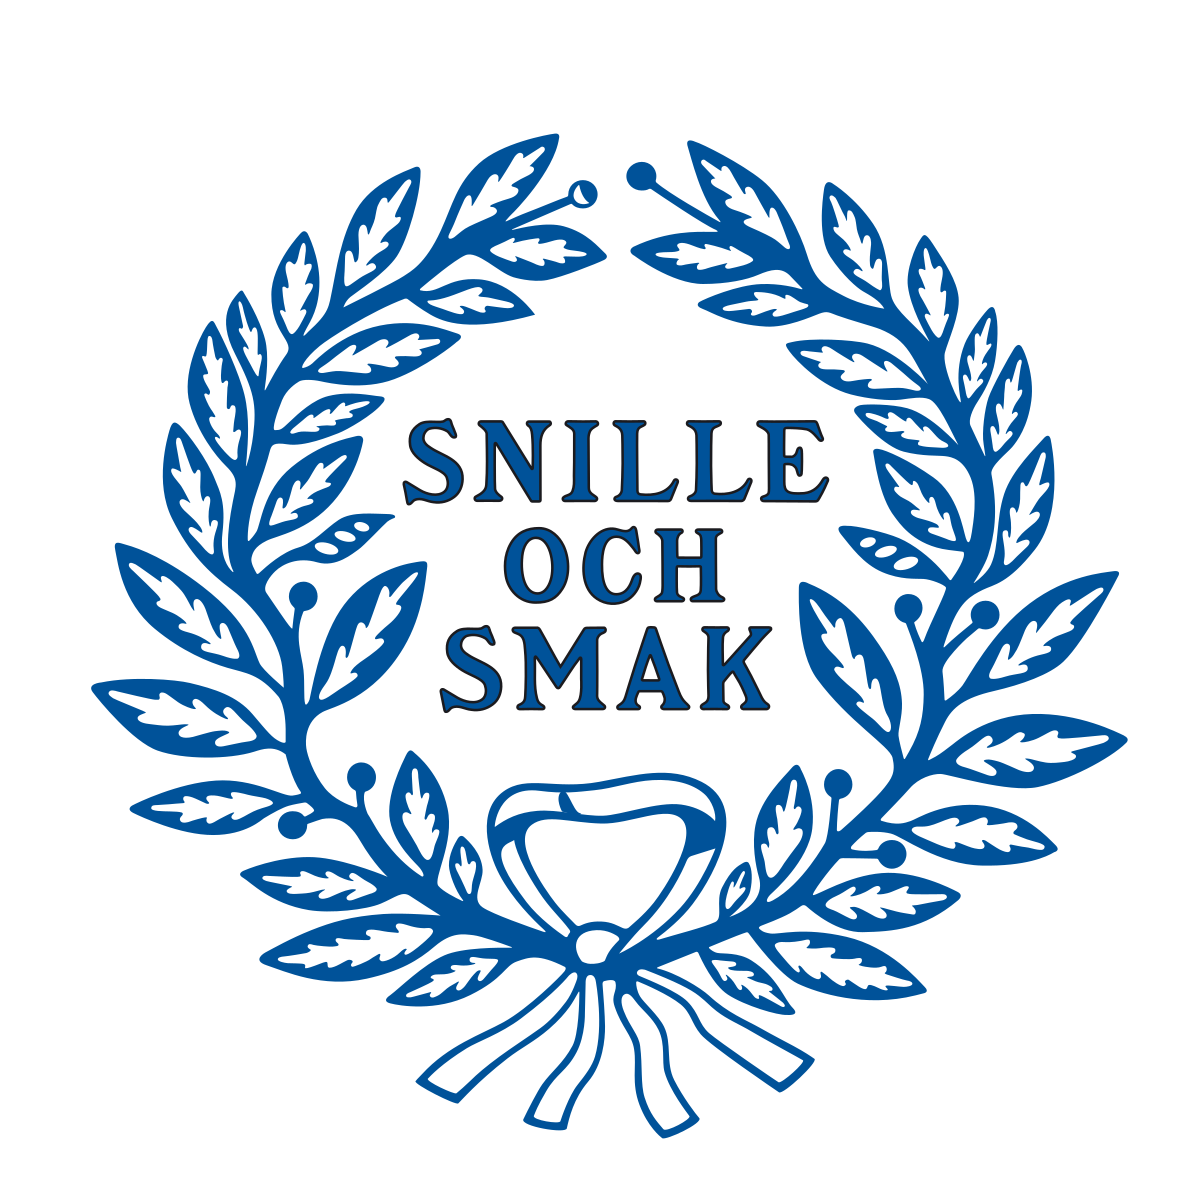 Svenska akademiens logotyp